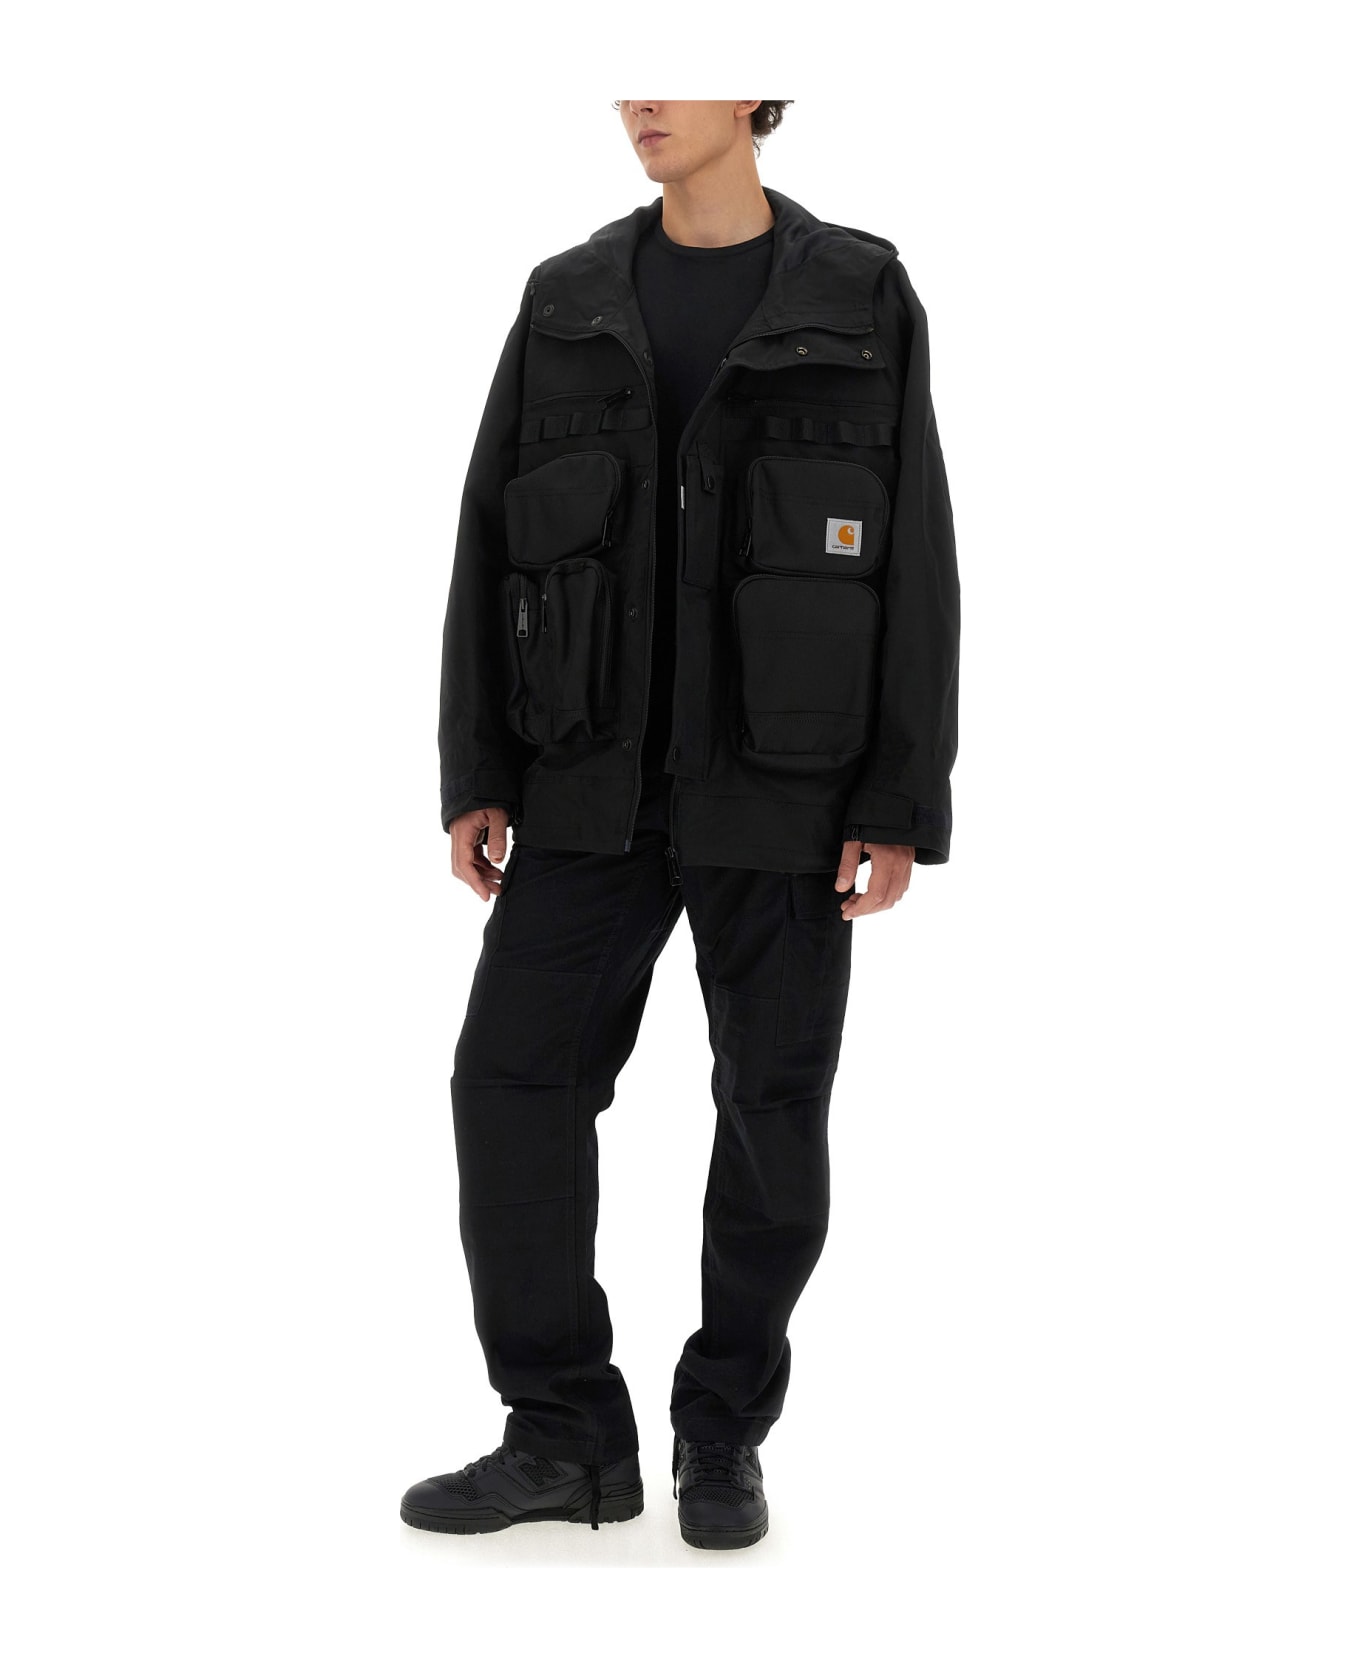 Junya Watanabe X Carhartt Jacket - Black ジャケット